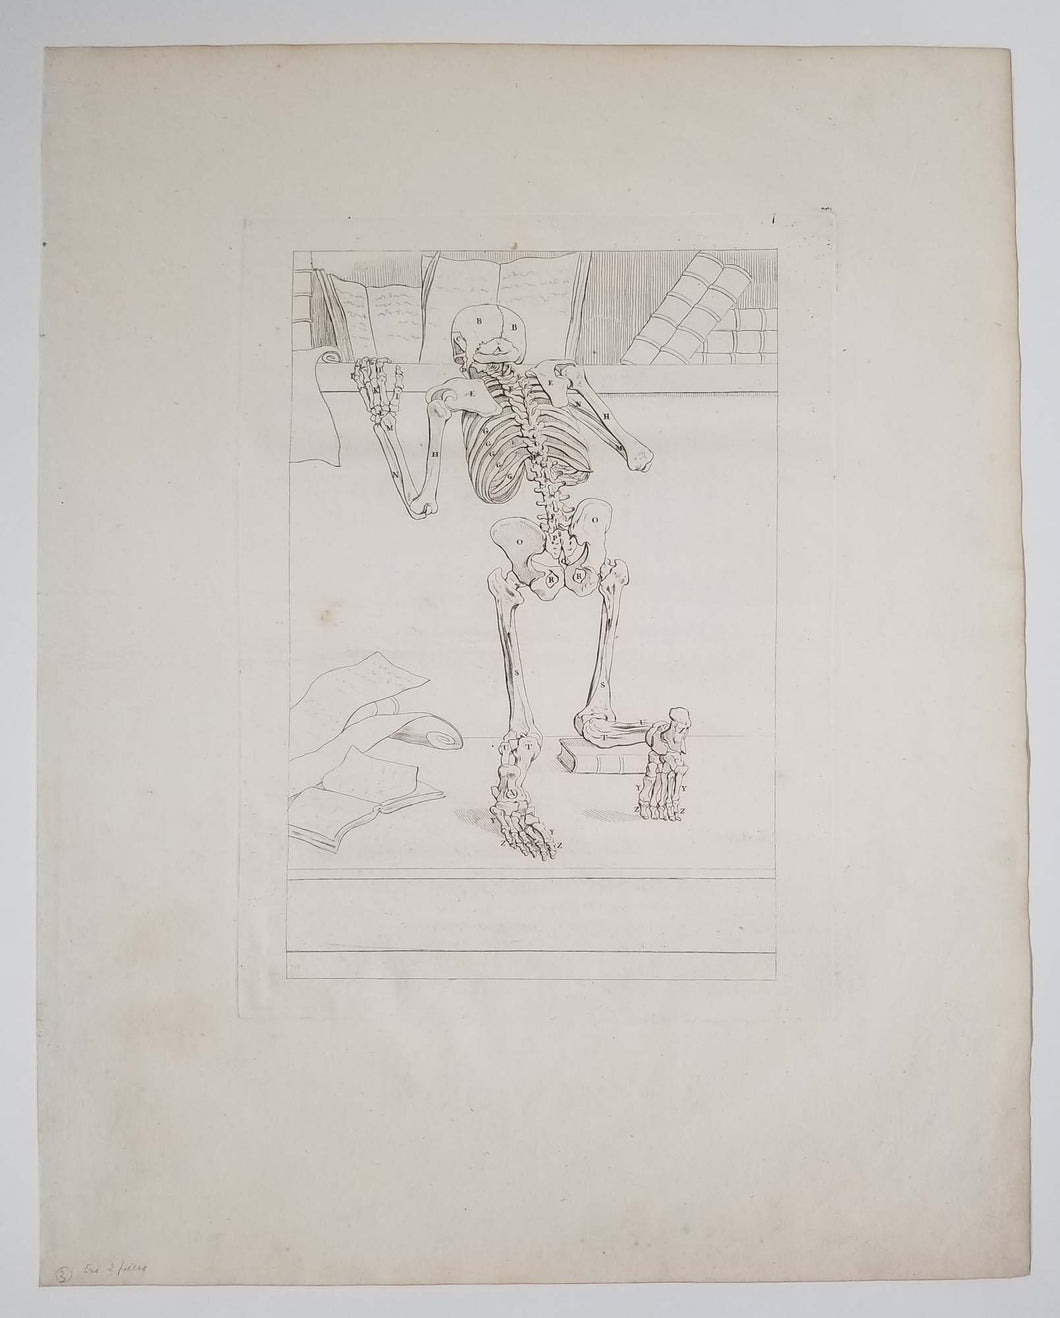 Squelette vu par derrière, agenouillé. 1779.